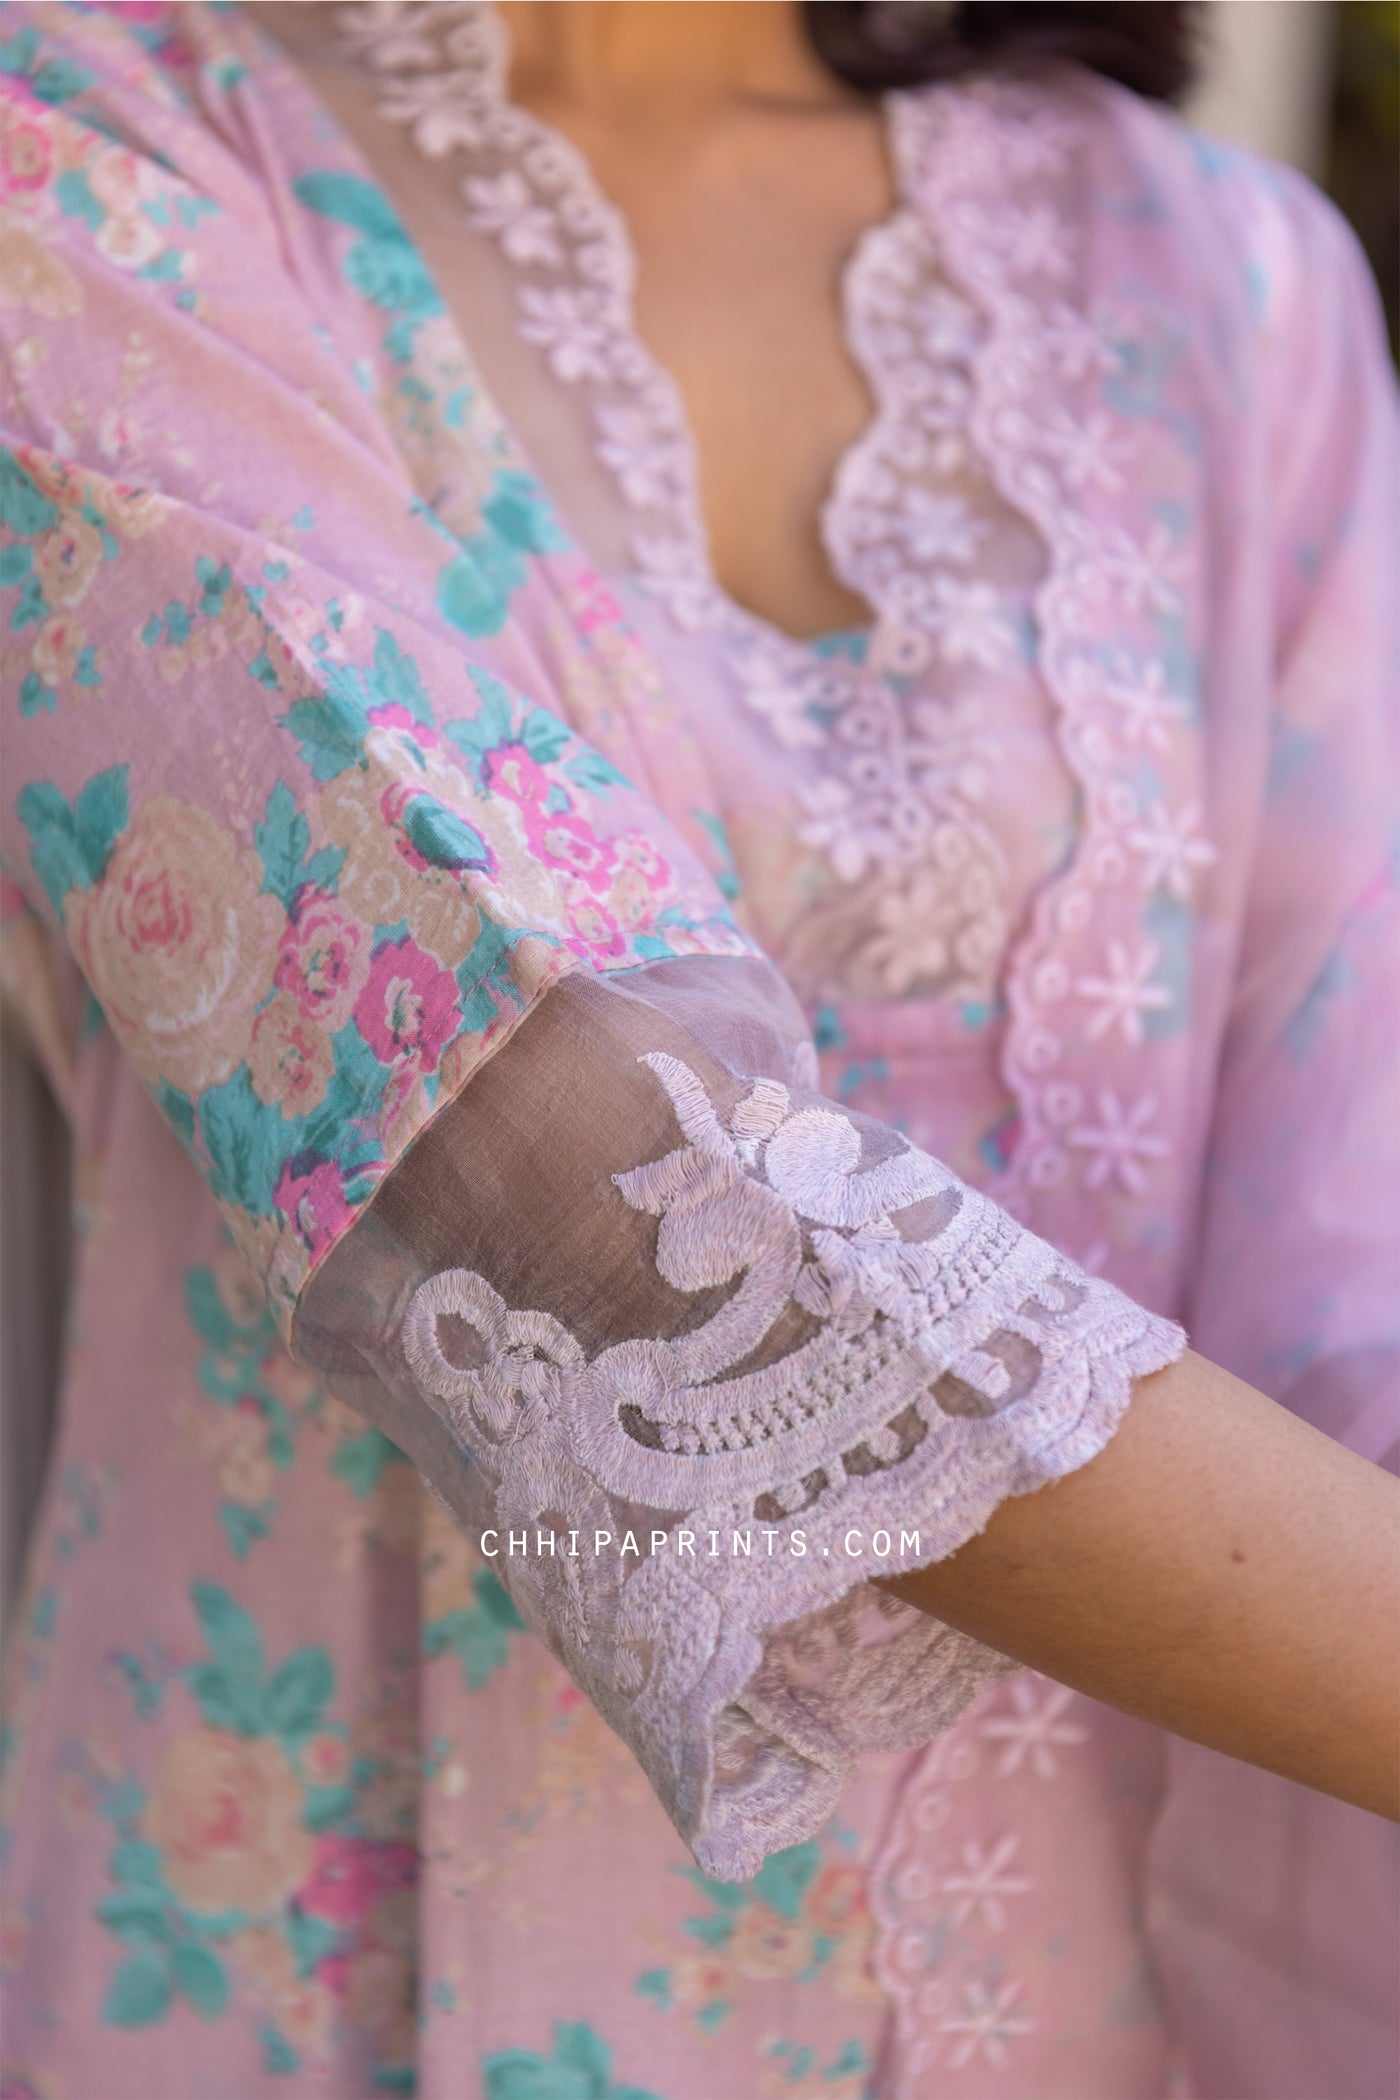 Cotton Floral Jaal Organza Lace Suit Set in Mauve (Set of 3)